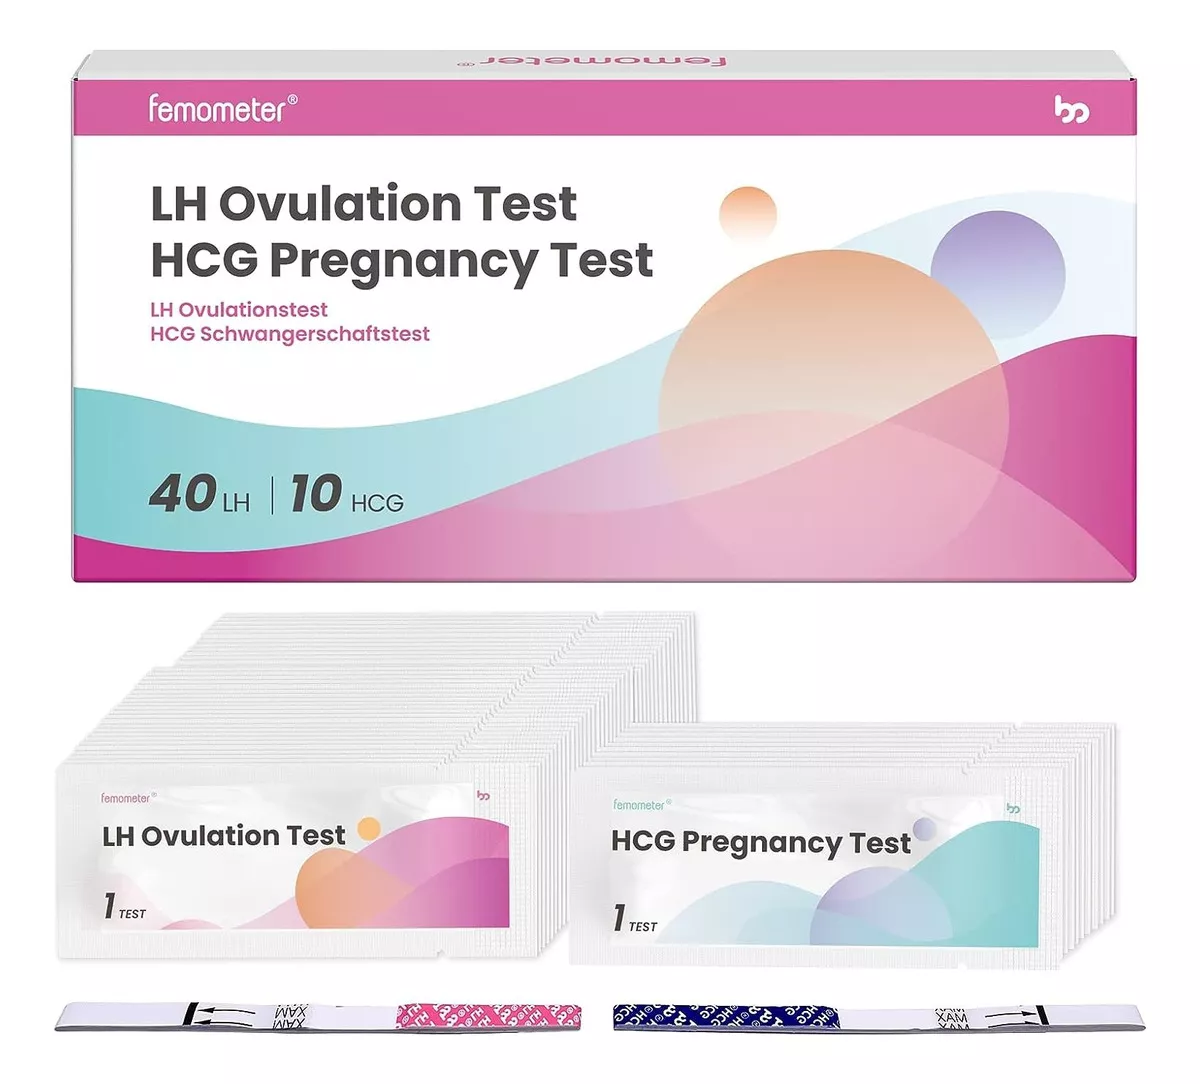 Tercera imagen para búsqueda de prueba de ovulacion